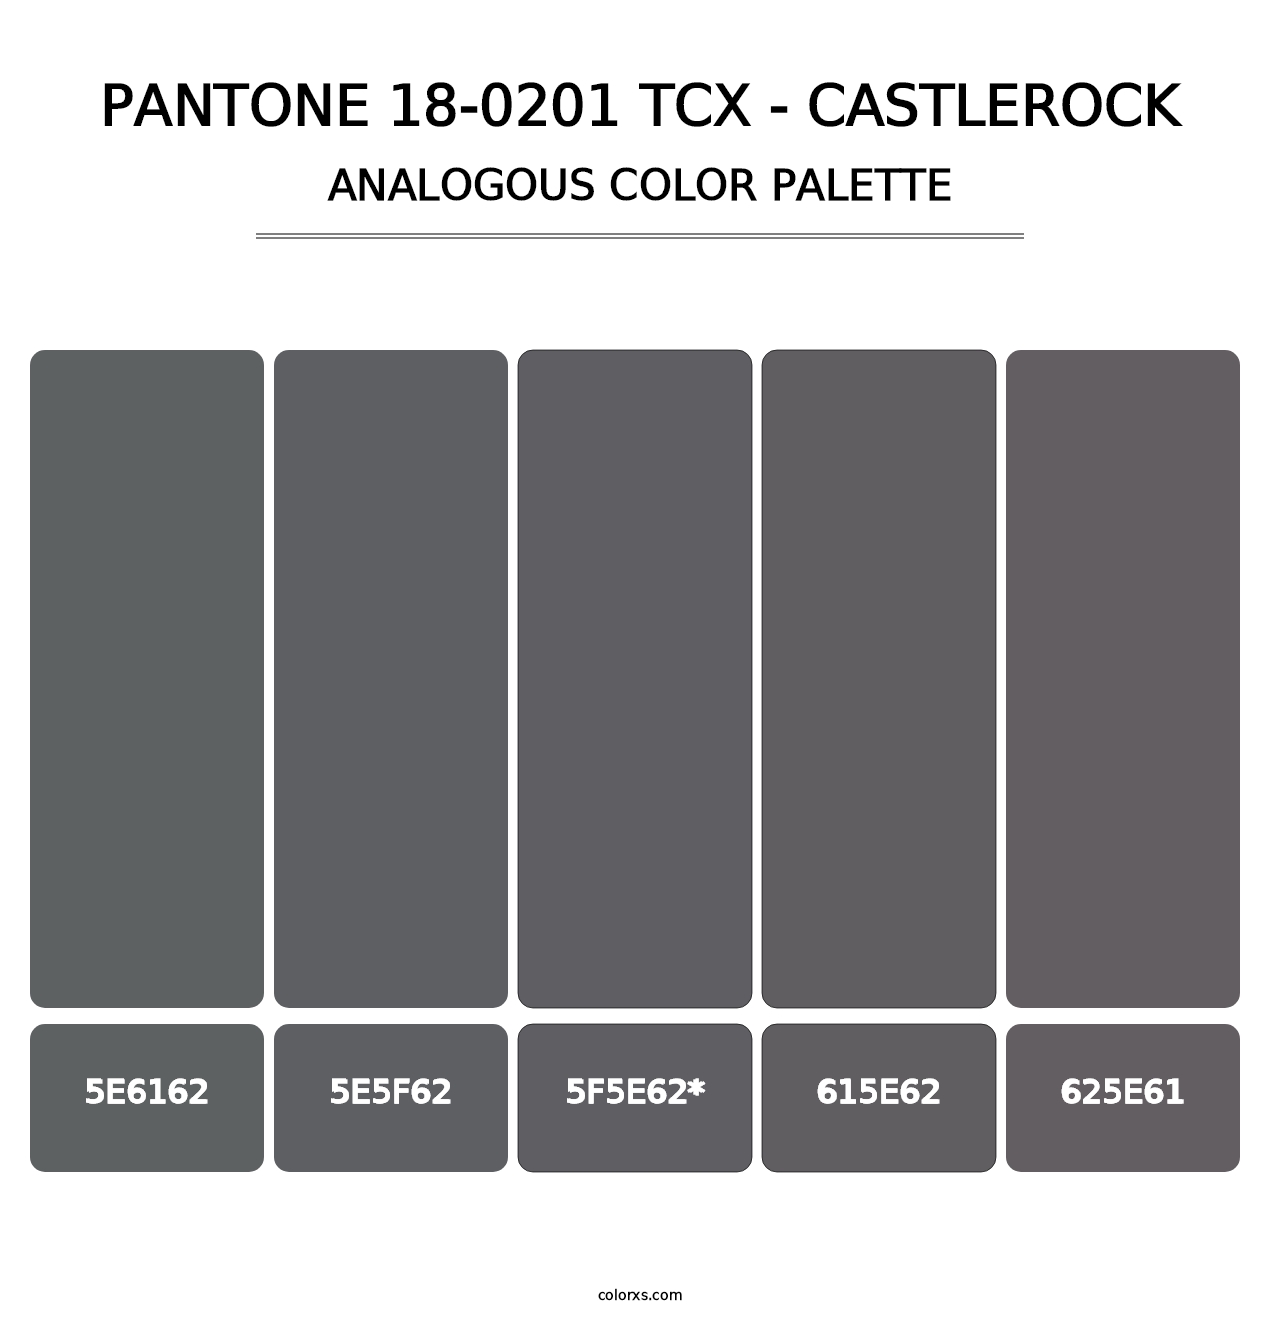 PANTONE 18-0201 TCX - Castlerock - Analogous Color Palette